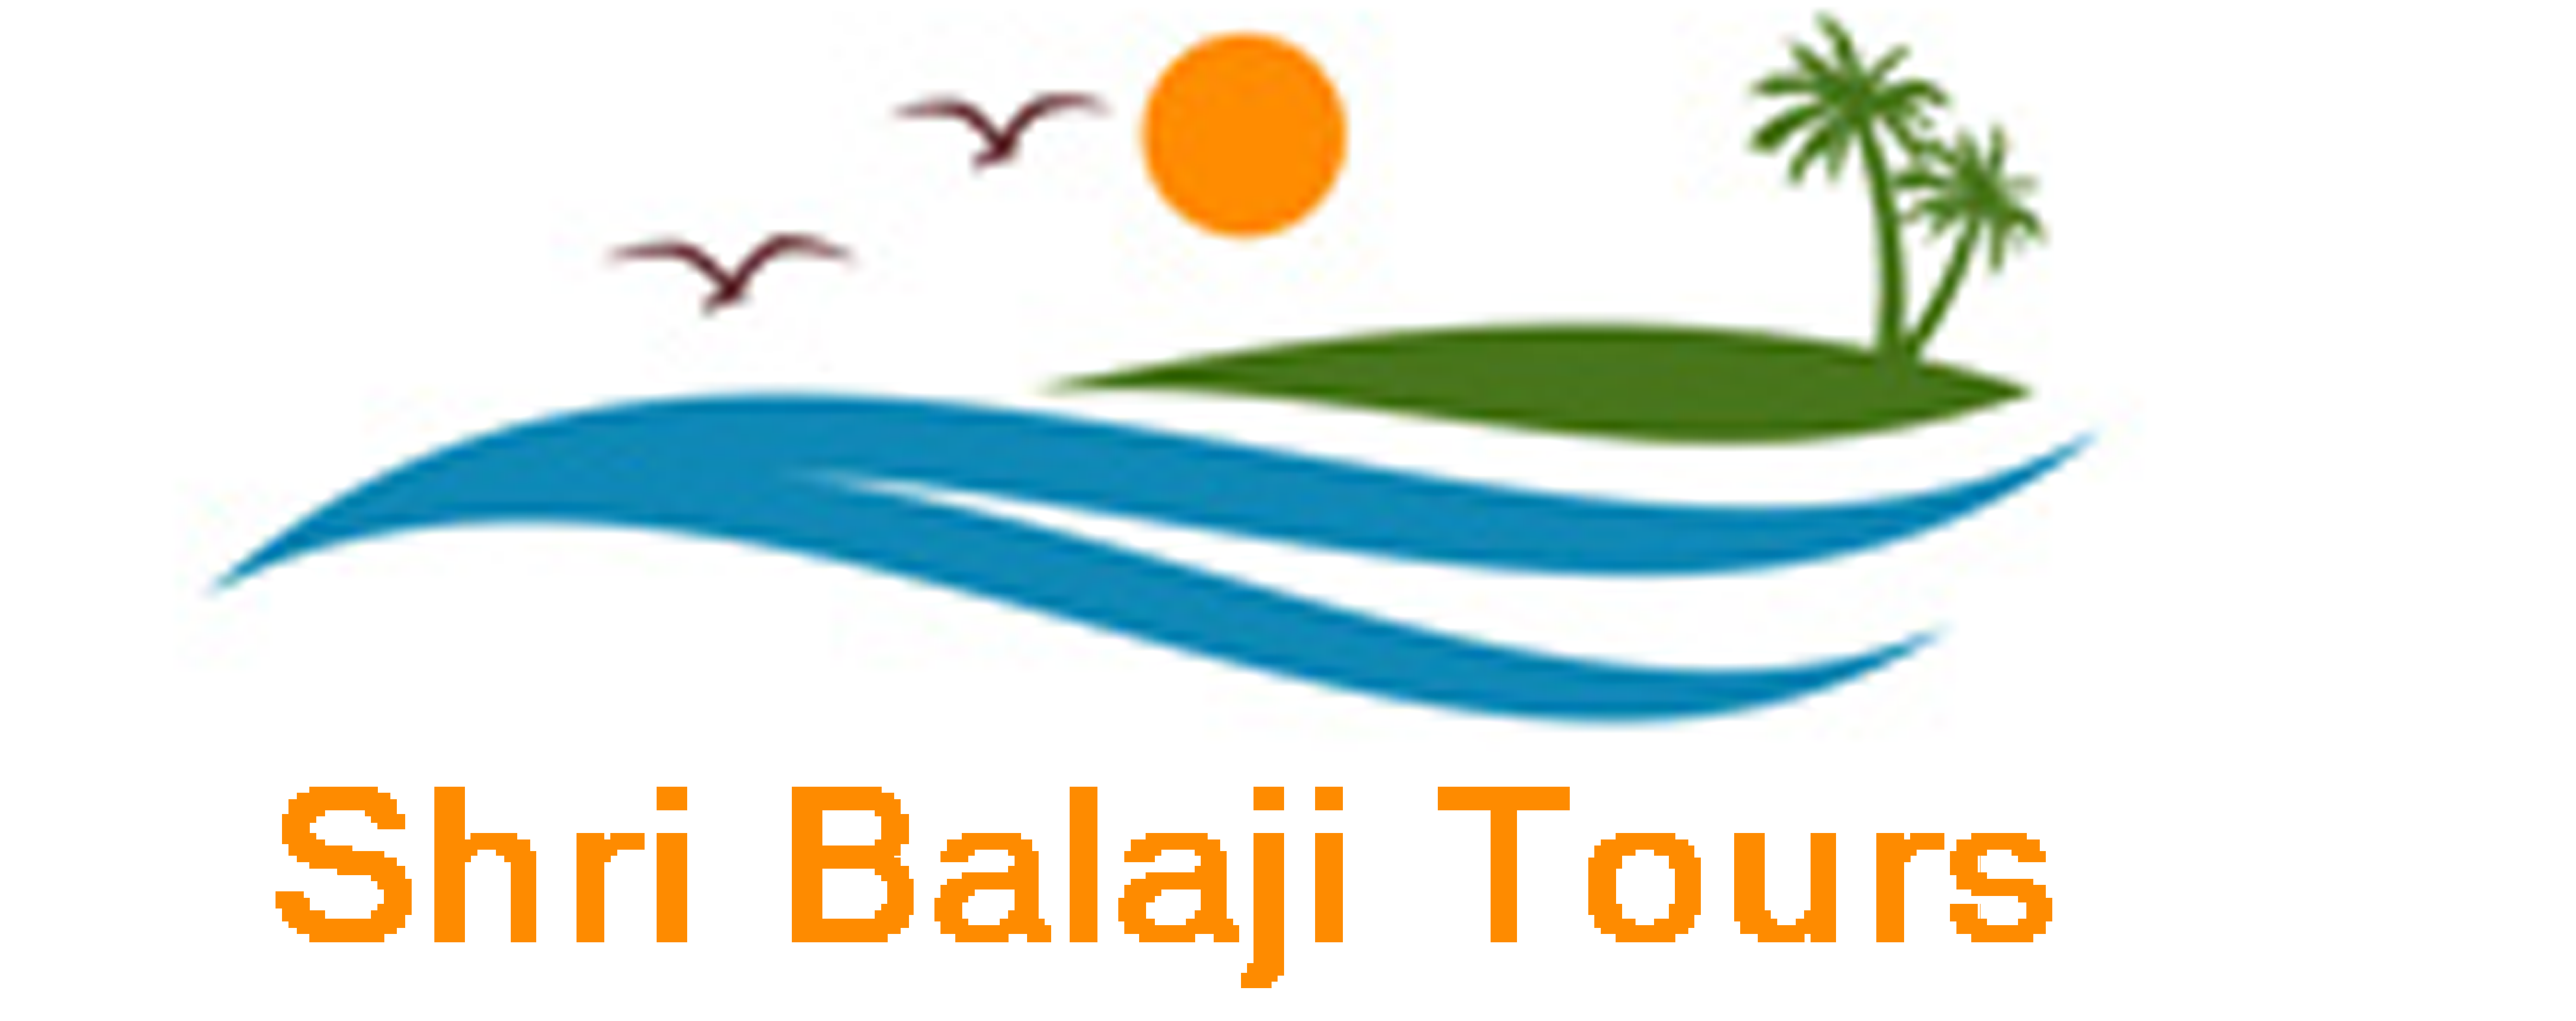 Shri Balaji Tours

